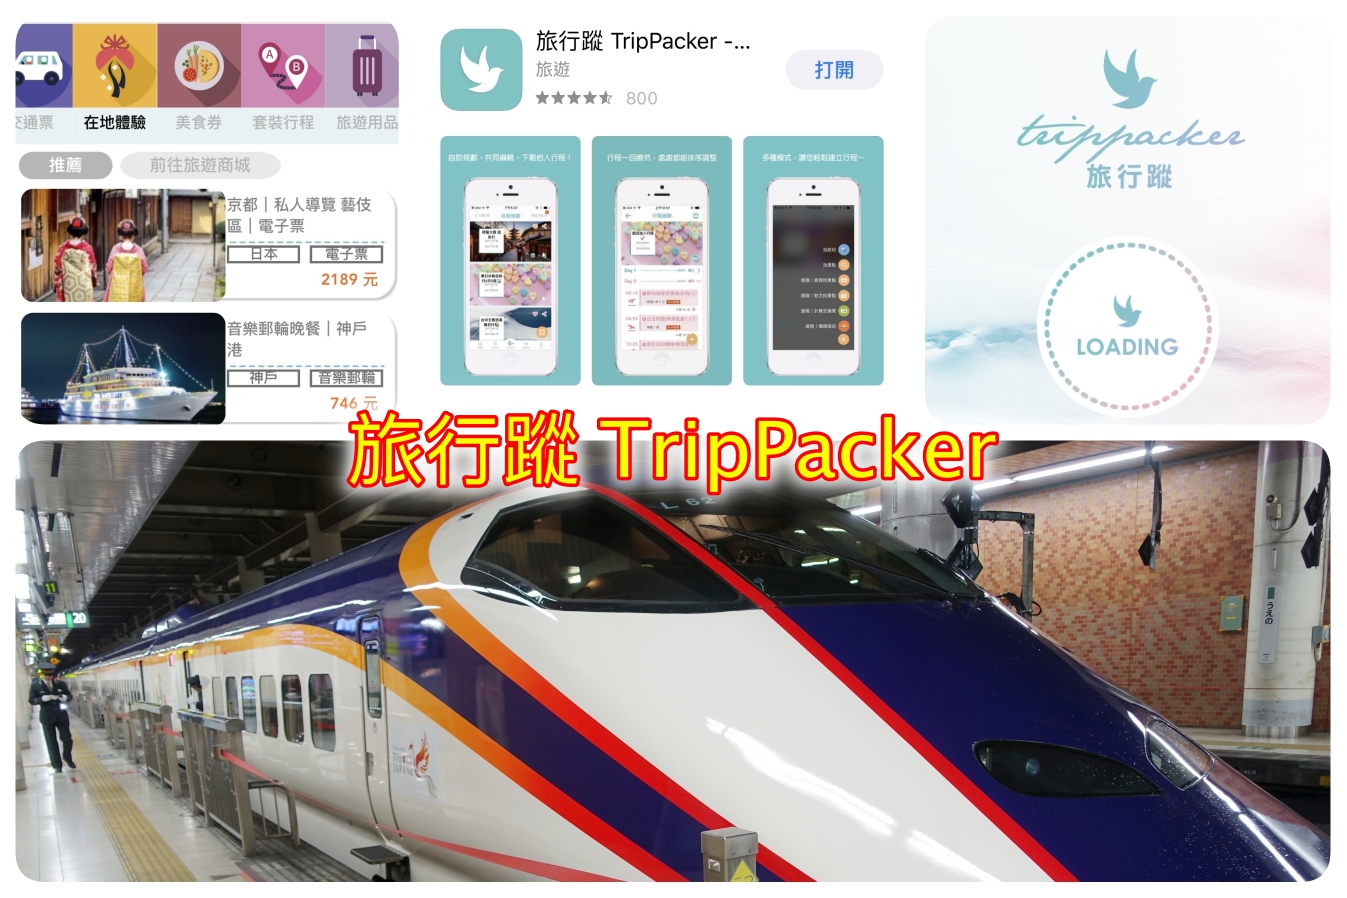 [分享]旅行蹤 TripPacker~快速新增排序行程．快速算出日本地鐵換乘路線與周遊券．自動計算抵達時間與時刻表快速查詢 @VIVIYU小世界